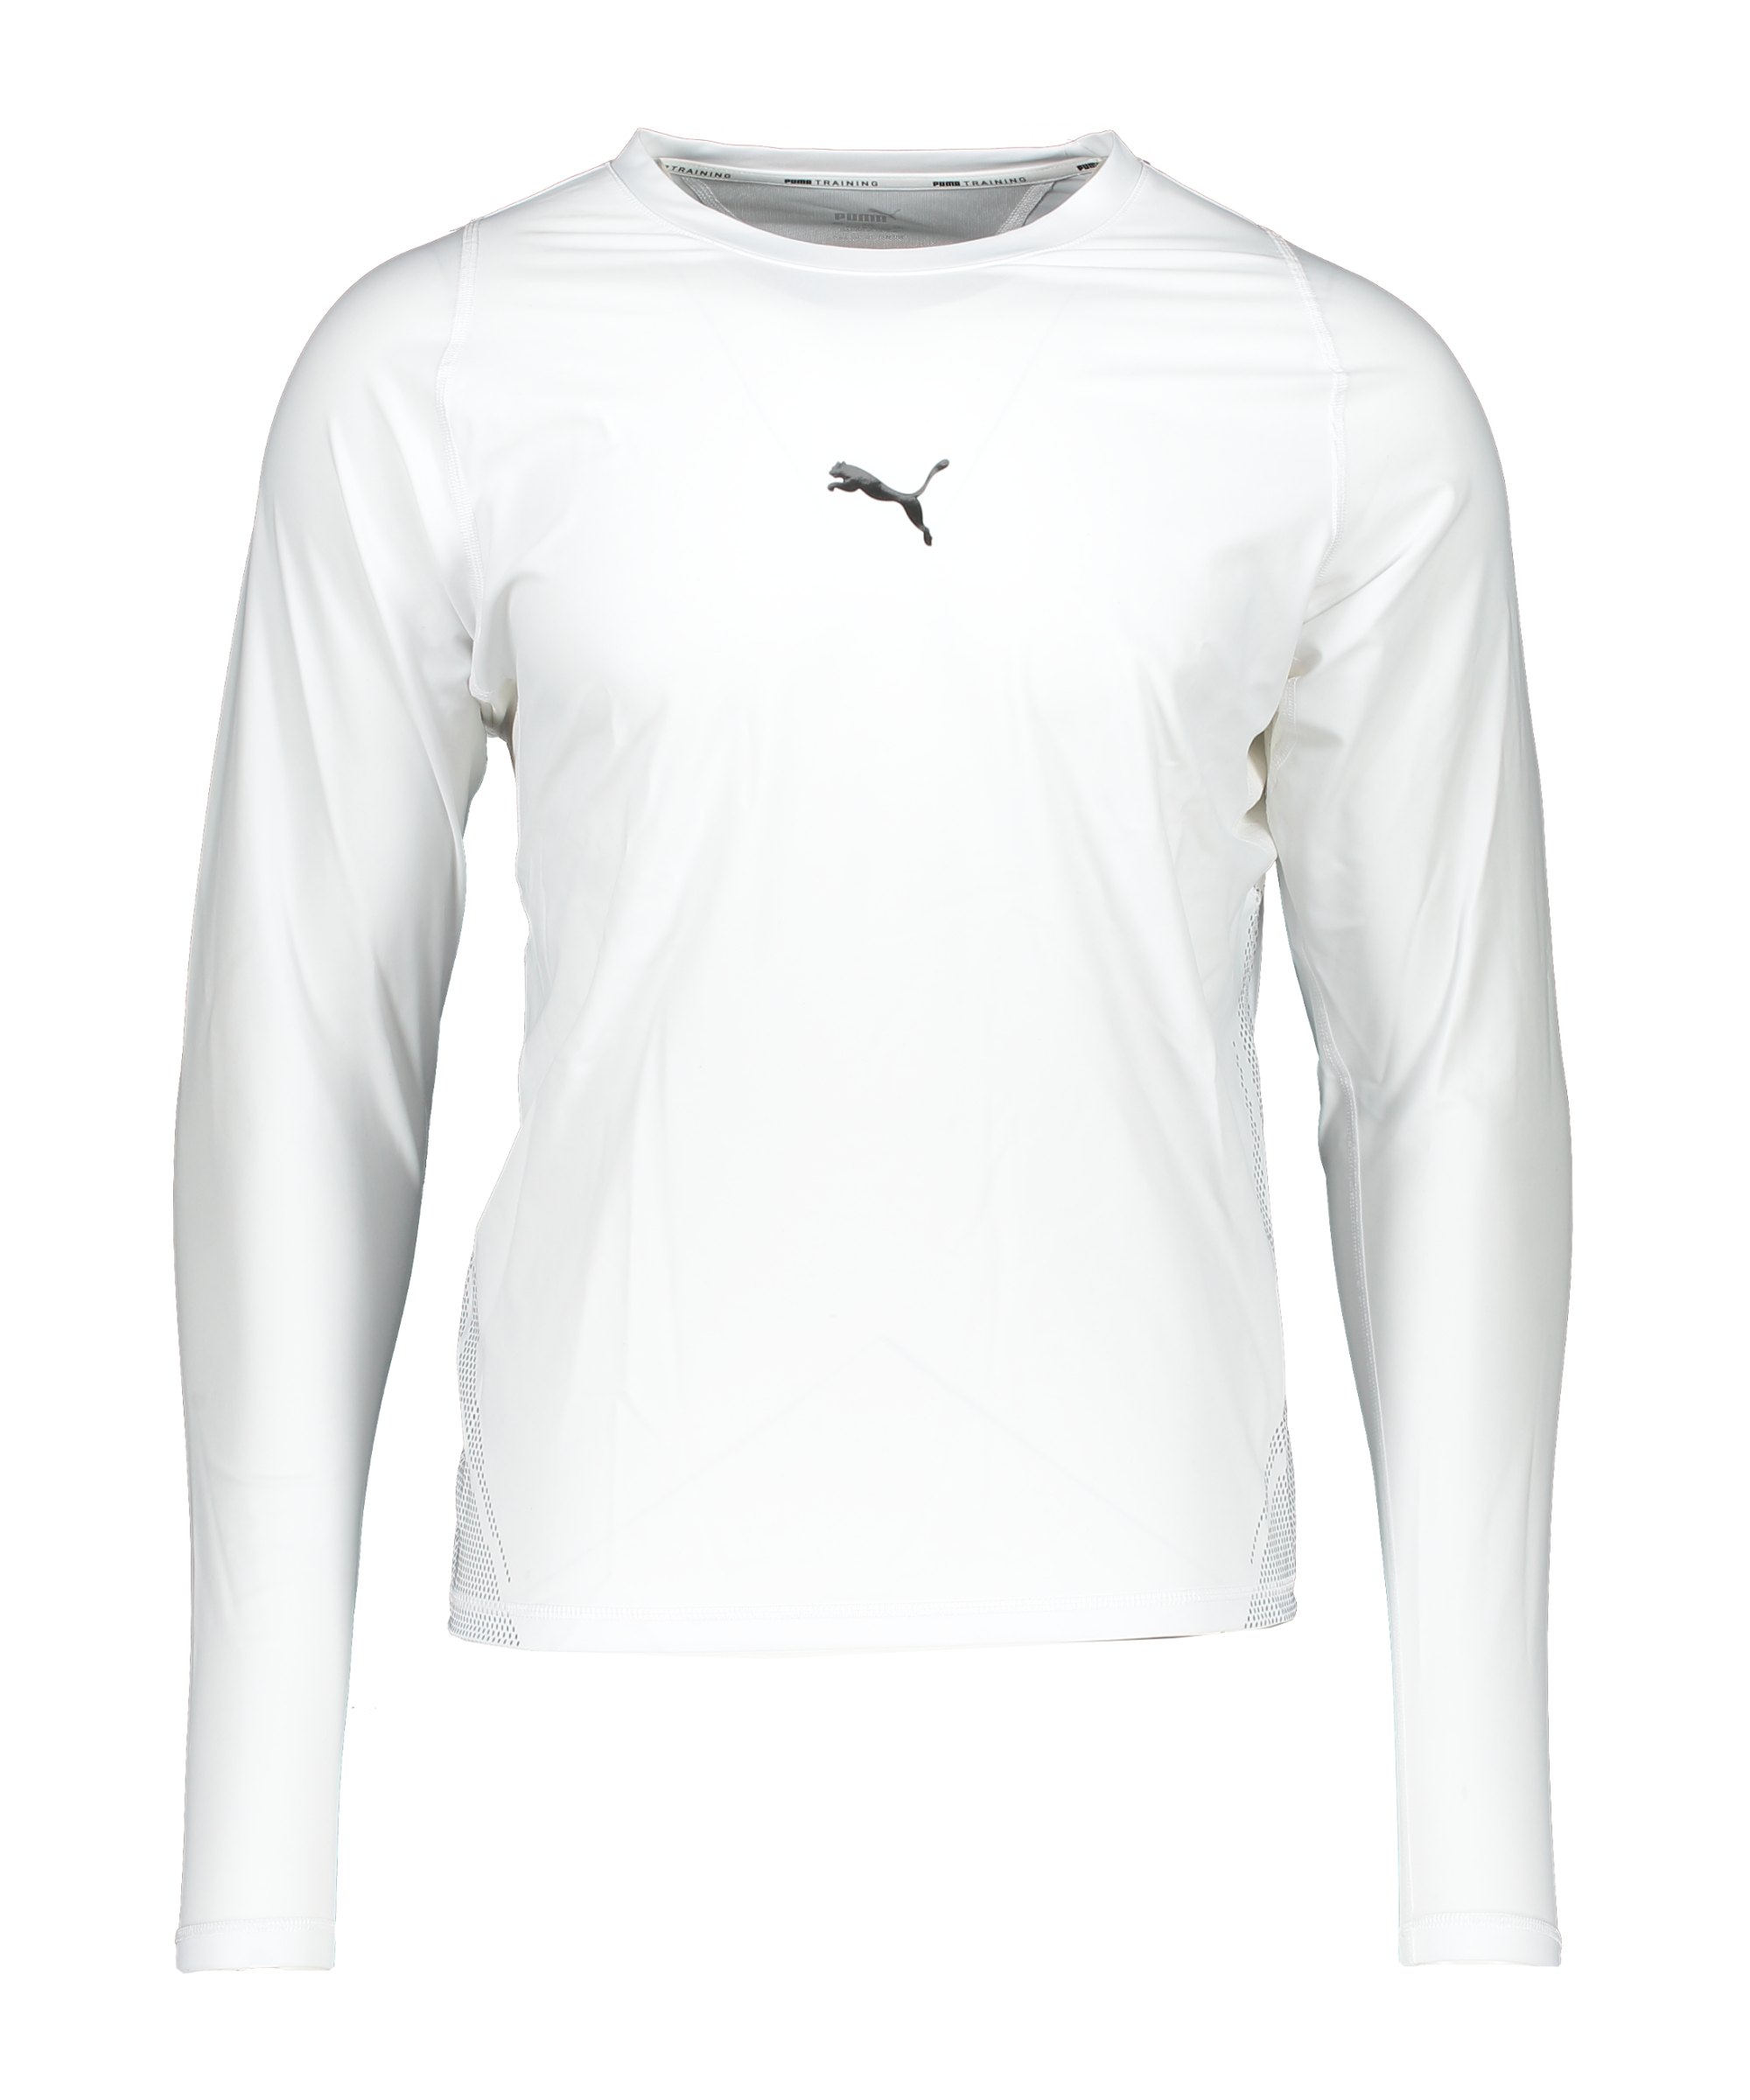 PUMA Exo-Adapt T-Shirt Weiss F02 - weiss